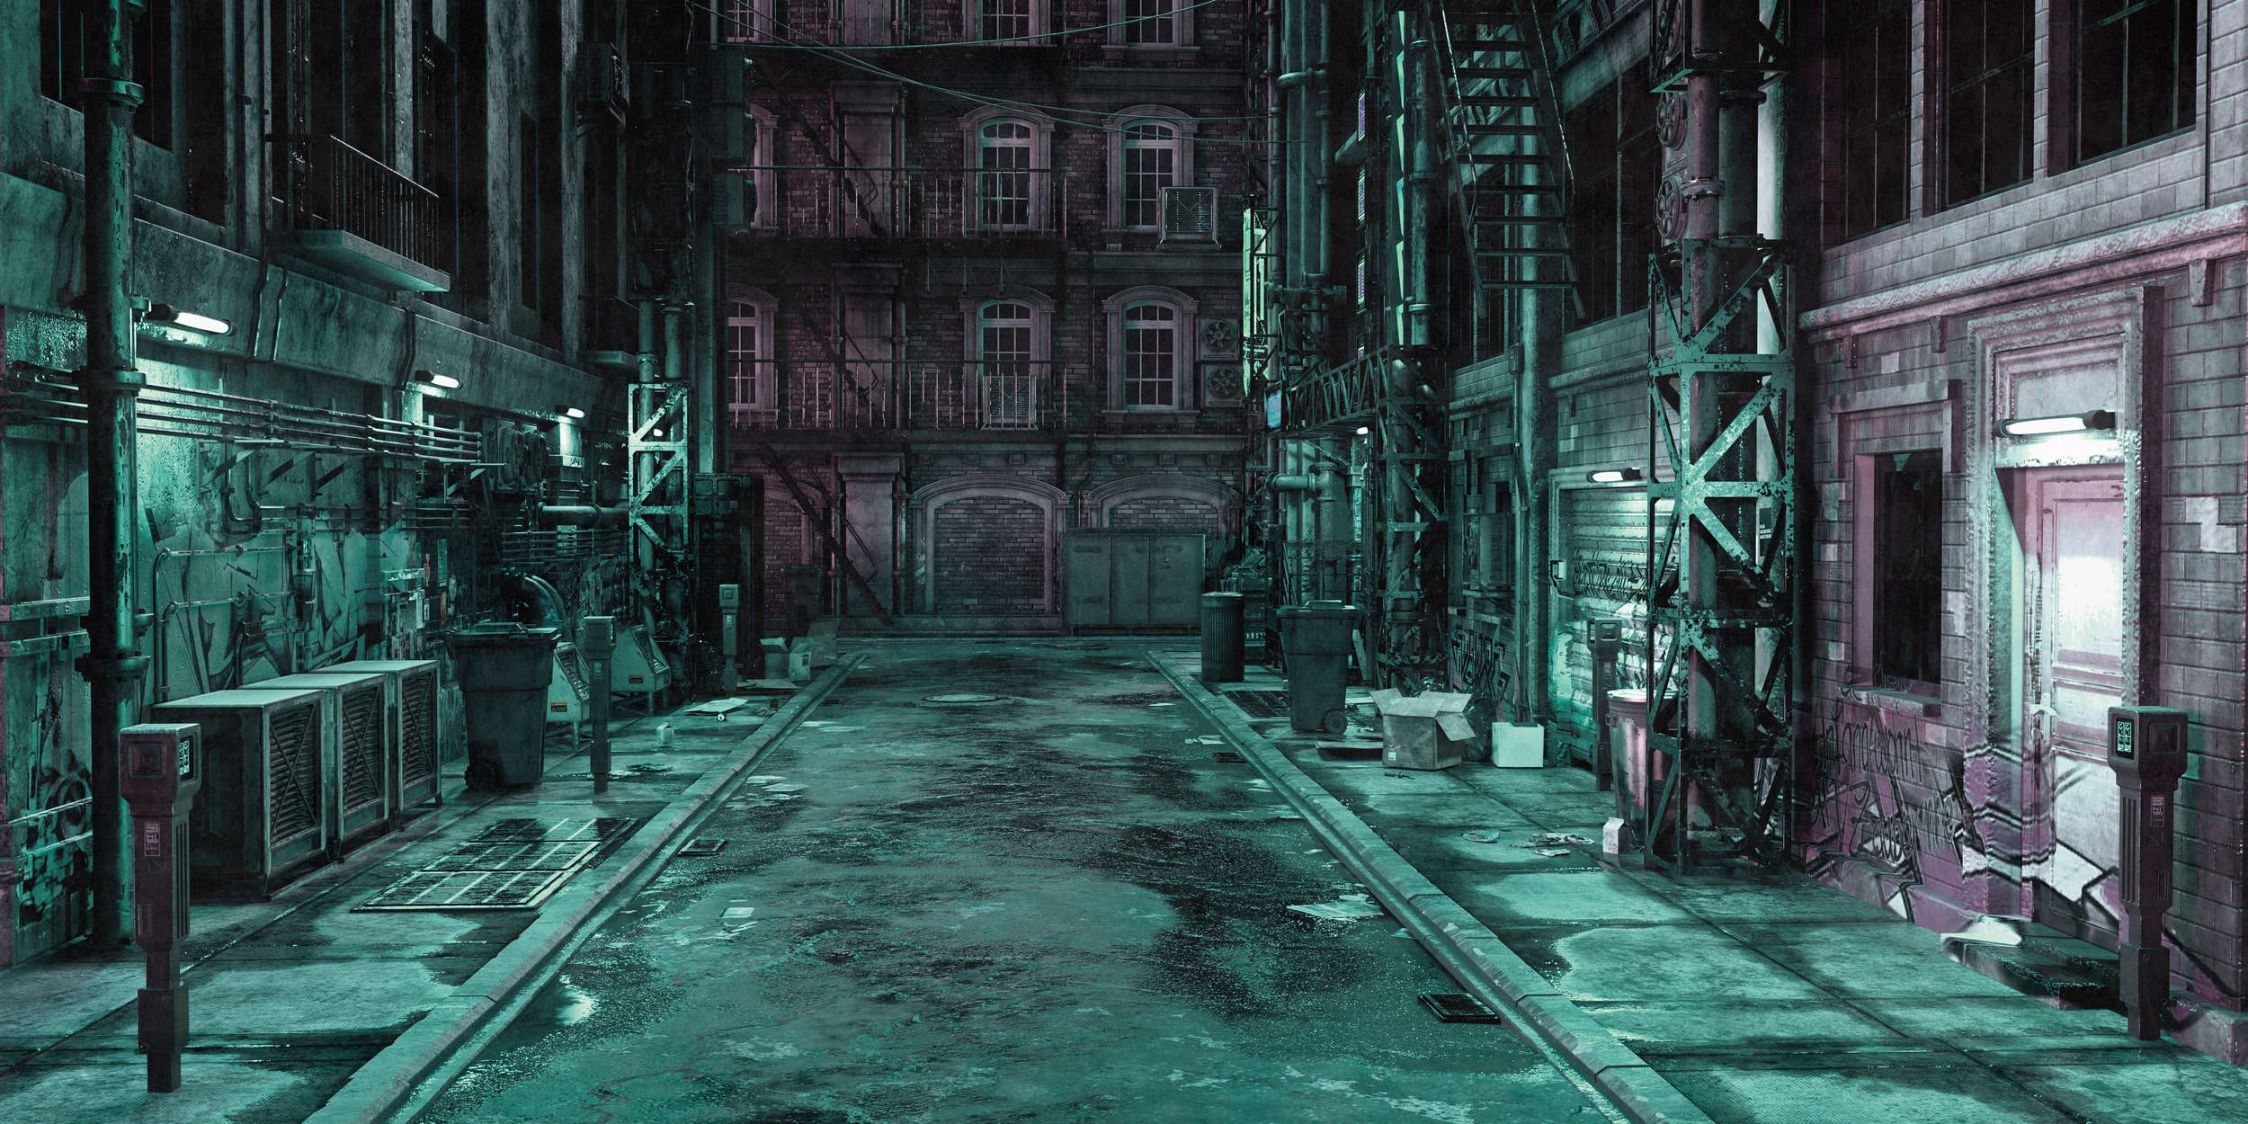             Digital behang »bronx« - Donkere zijstraat van een grote stad - Gladde, licht parelmoerglanzende vliesstof
        